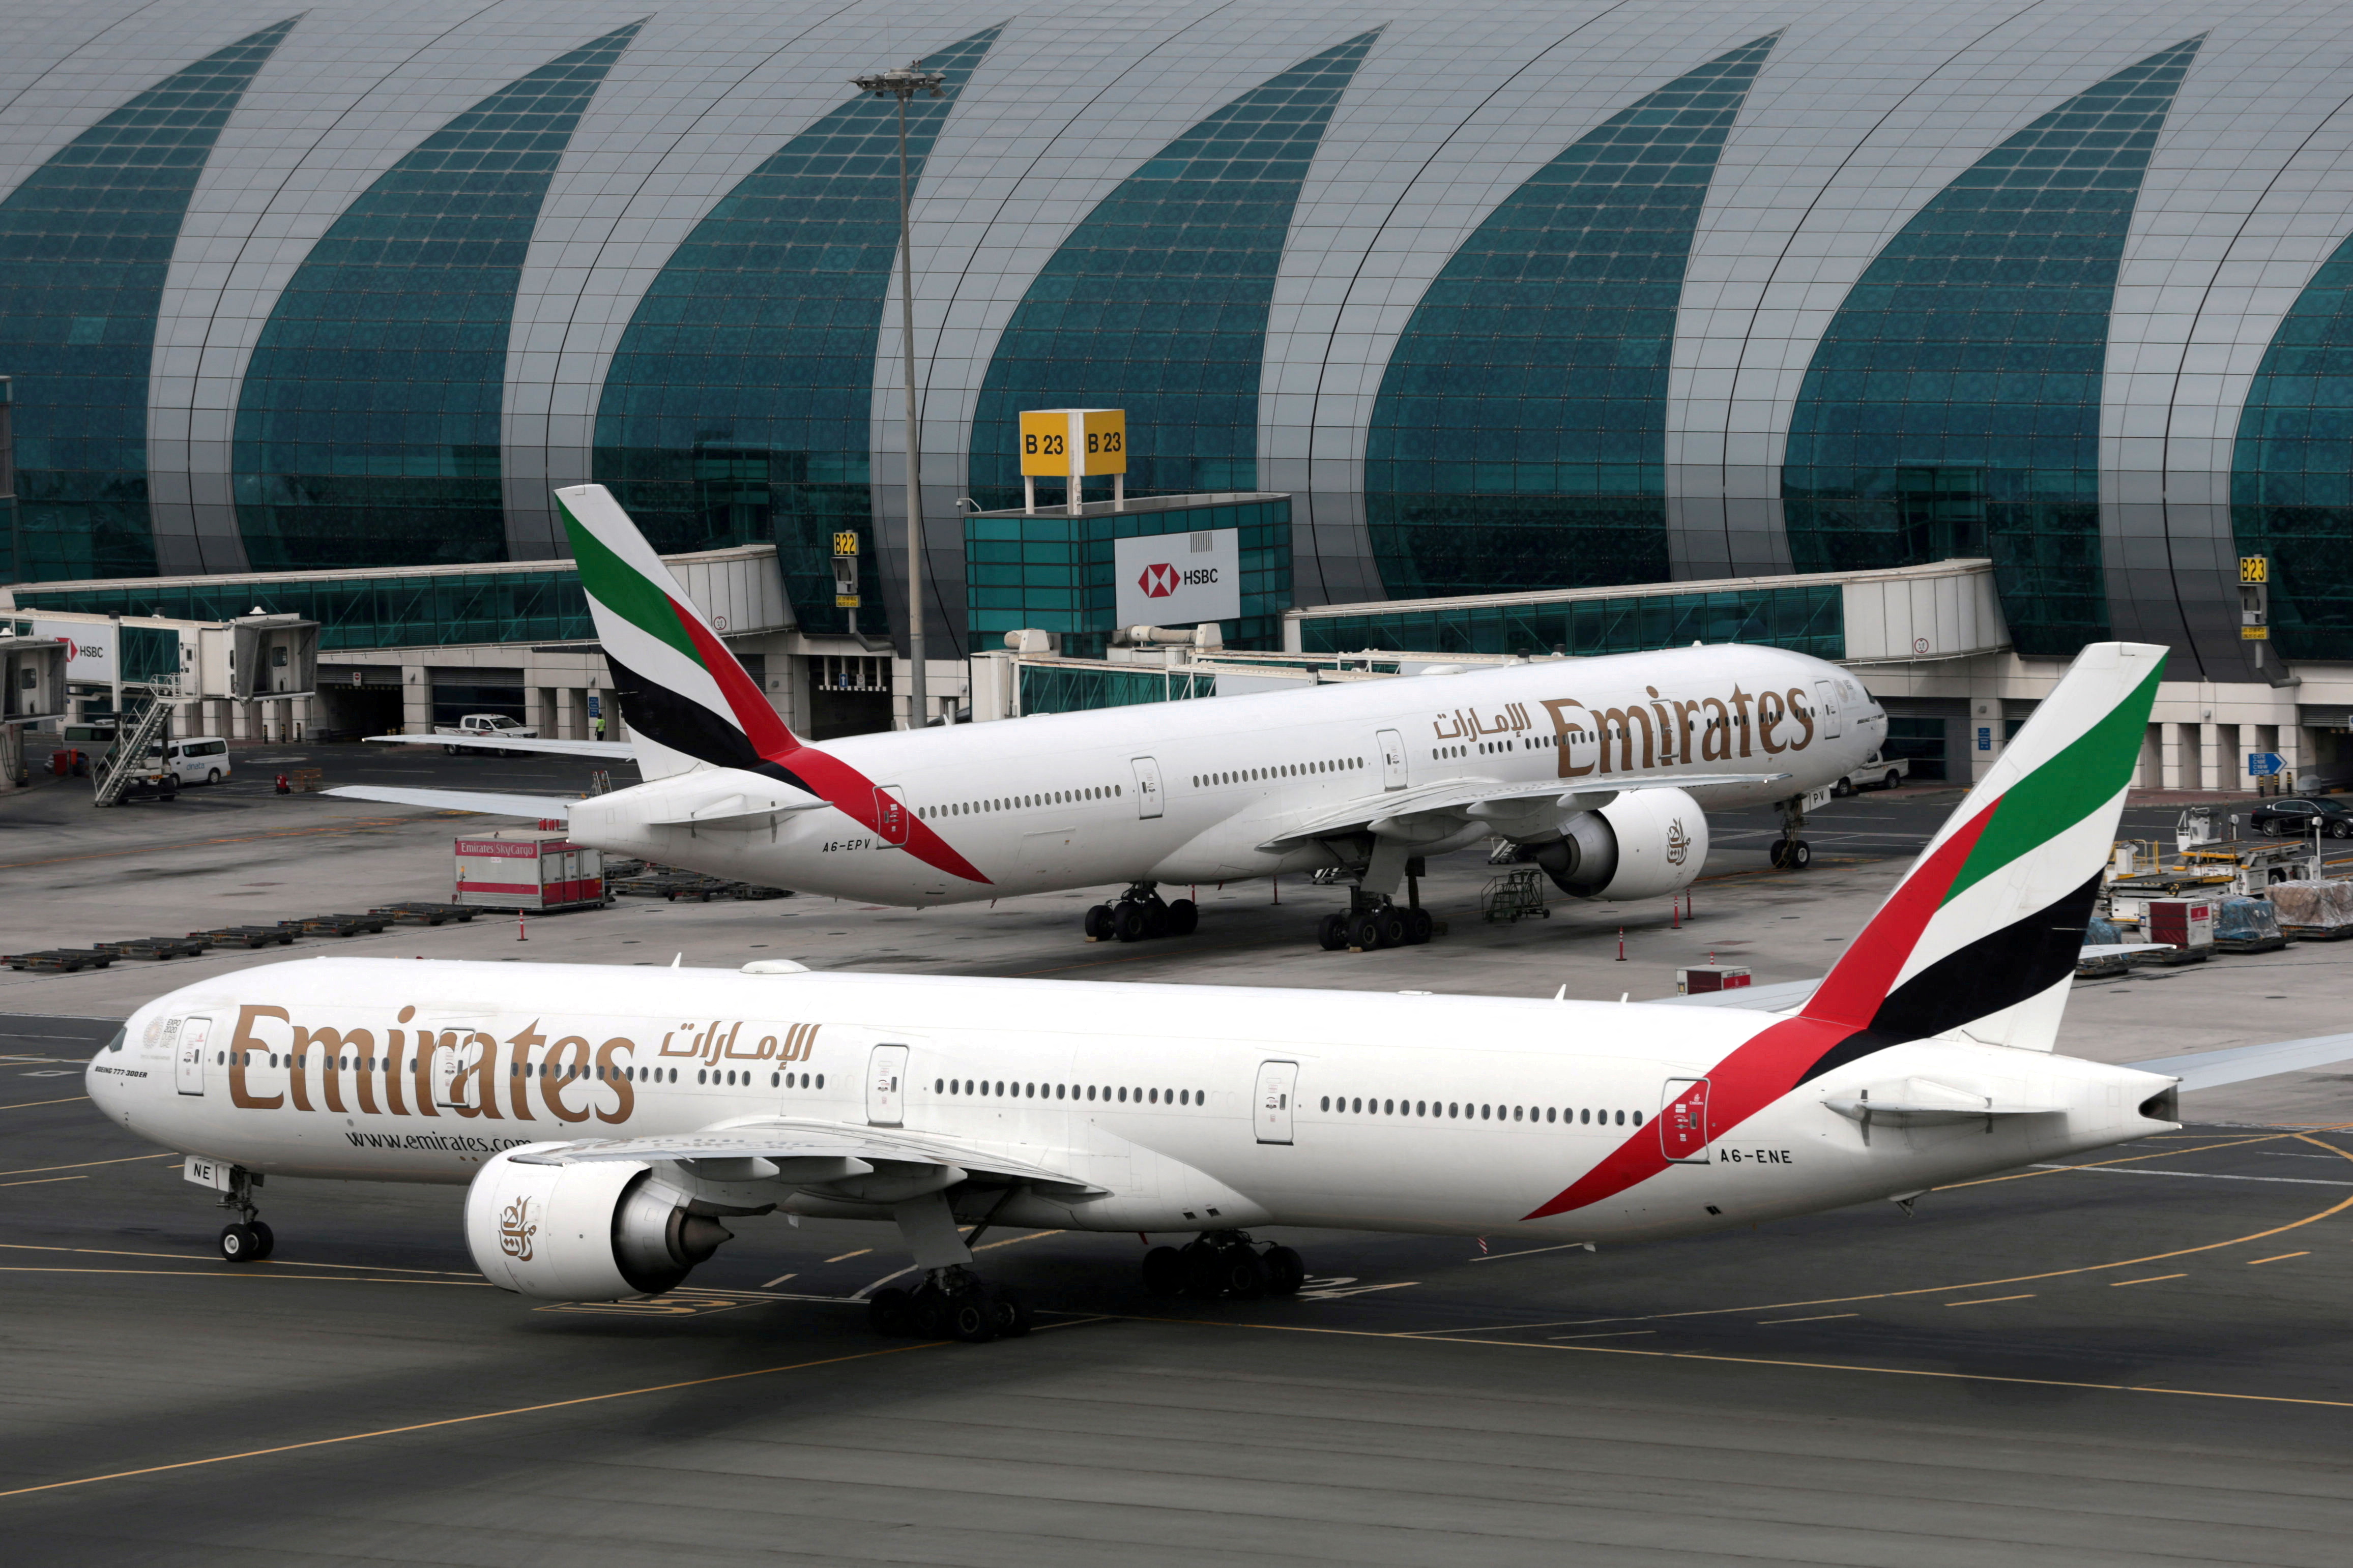 Este miércoles vuelve a llegar al país un avión de Emirates luego de haberse ido en la pandemia. (REUTERS/Christopher Pike/File Photo)